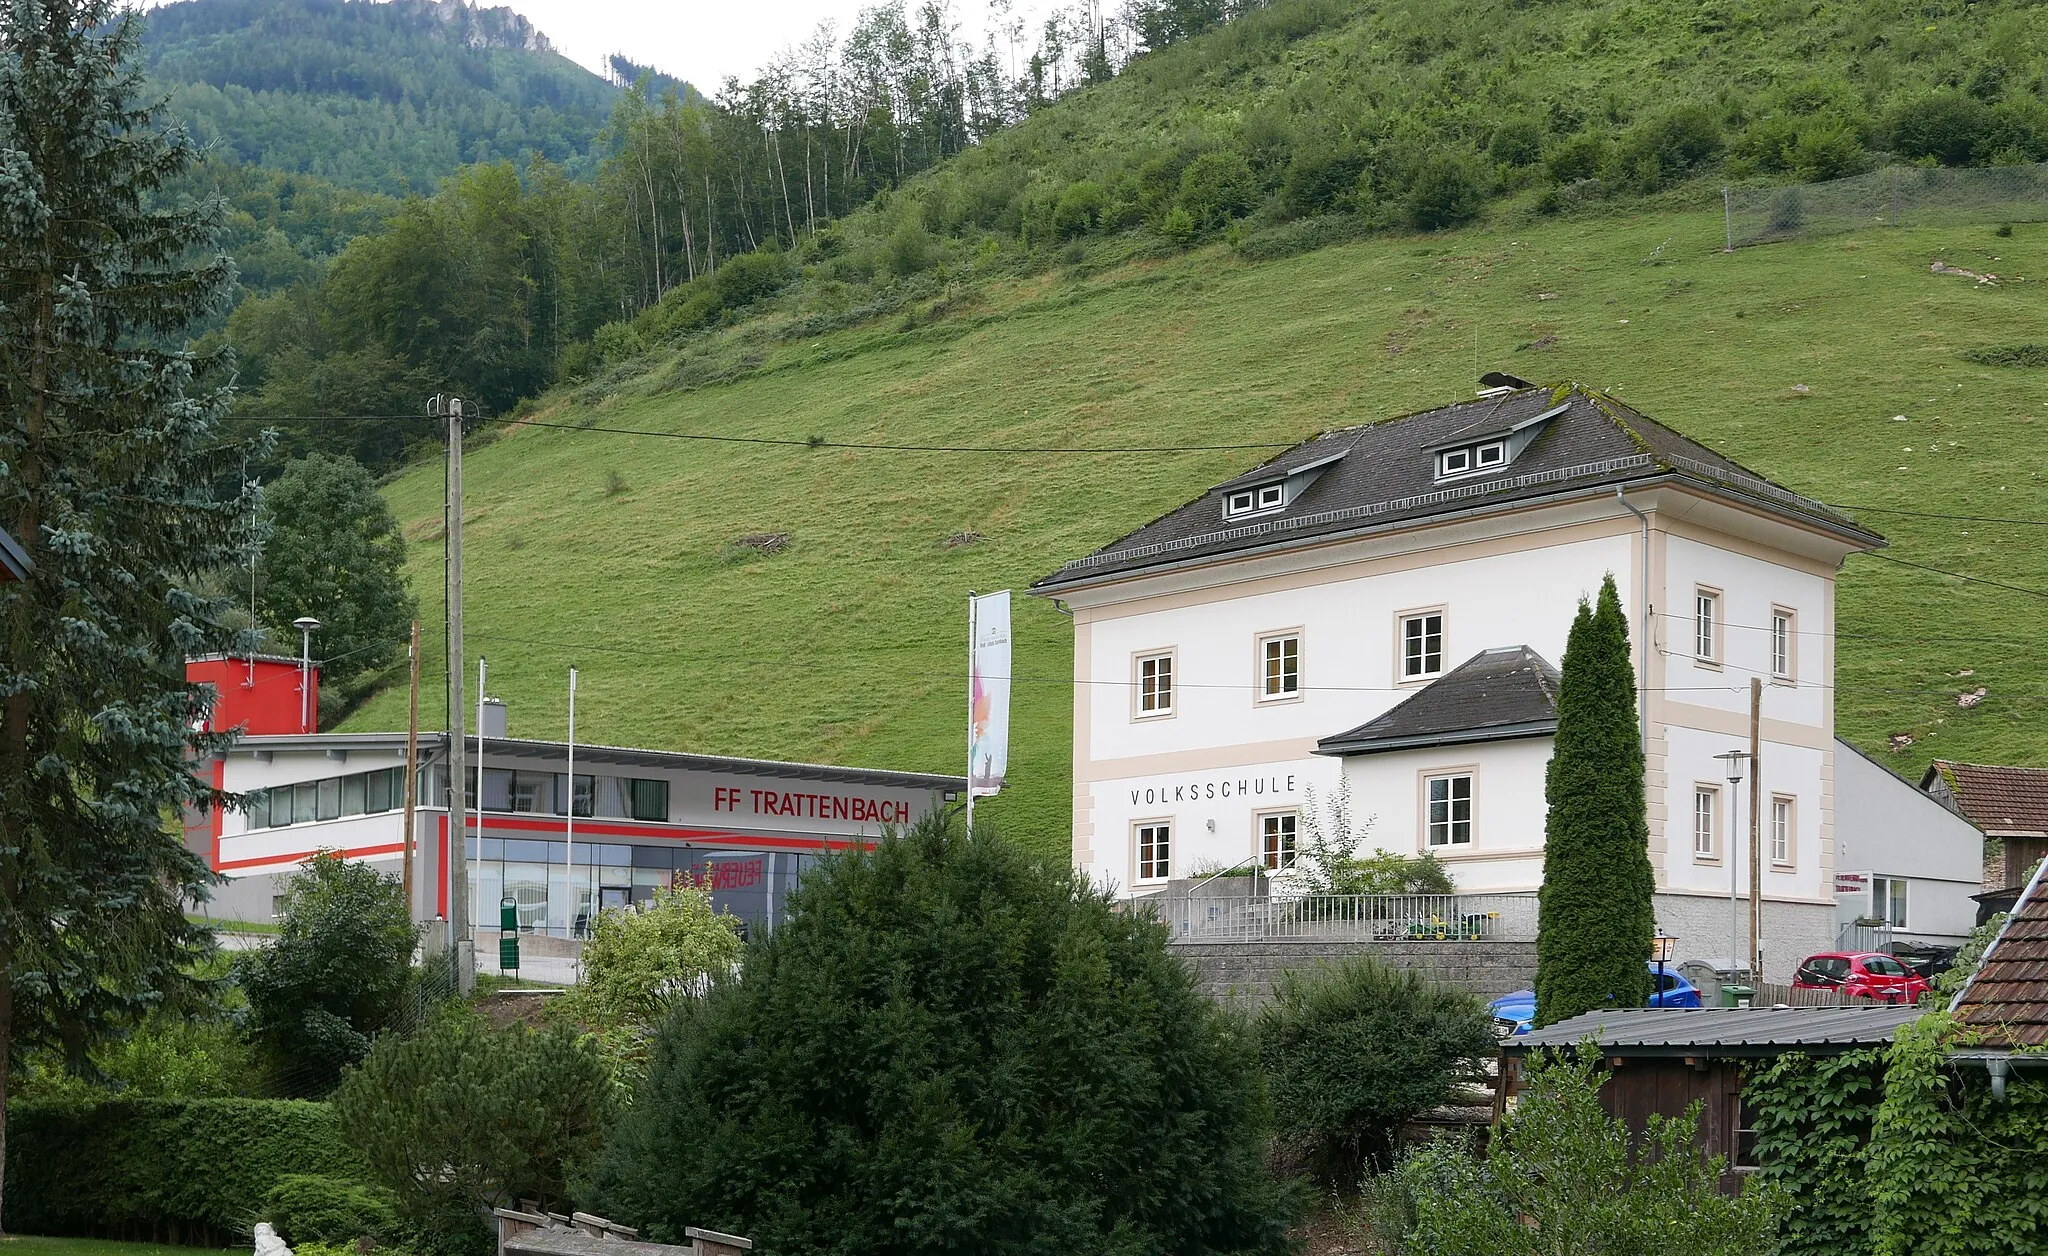 Photo showing: Ehemalige Volkschule in Trattenbach (heute Kultur- und BIldungseinrichtung), neues Feuerwehrgebäude (links)